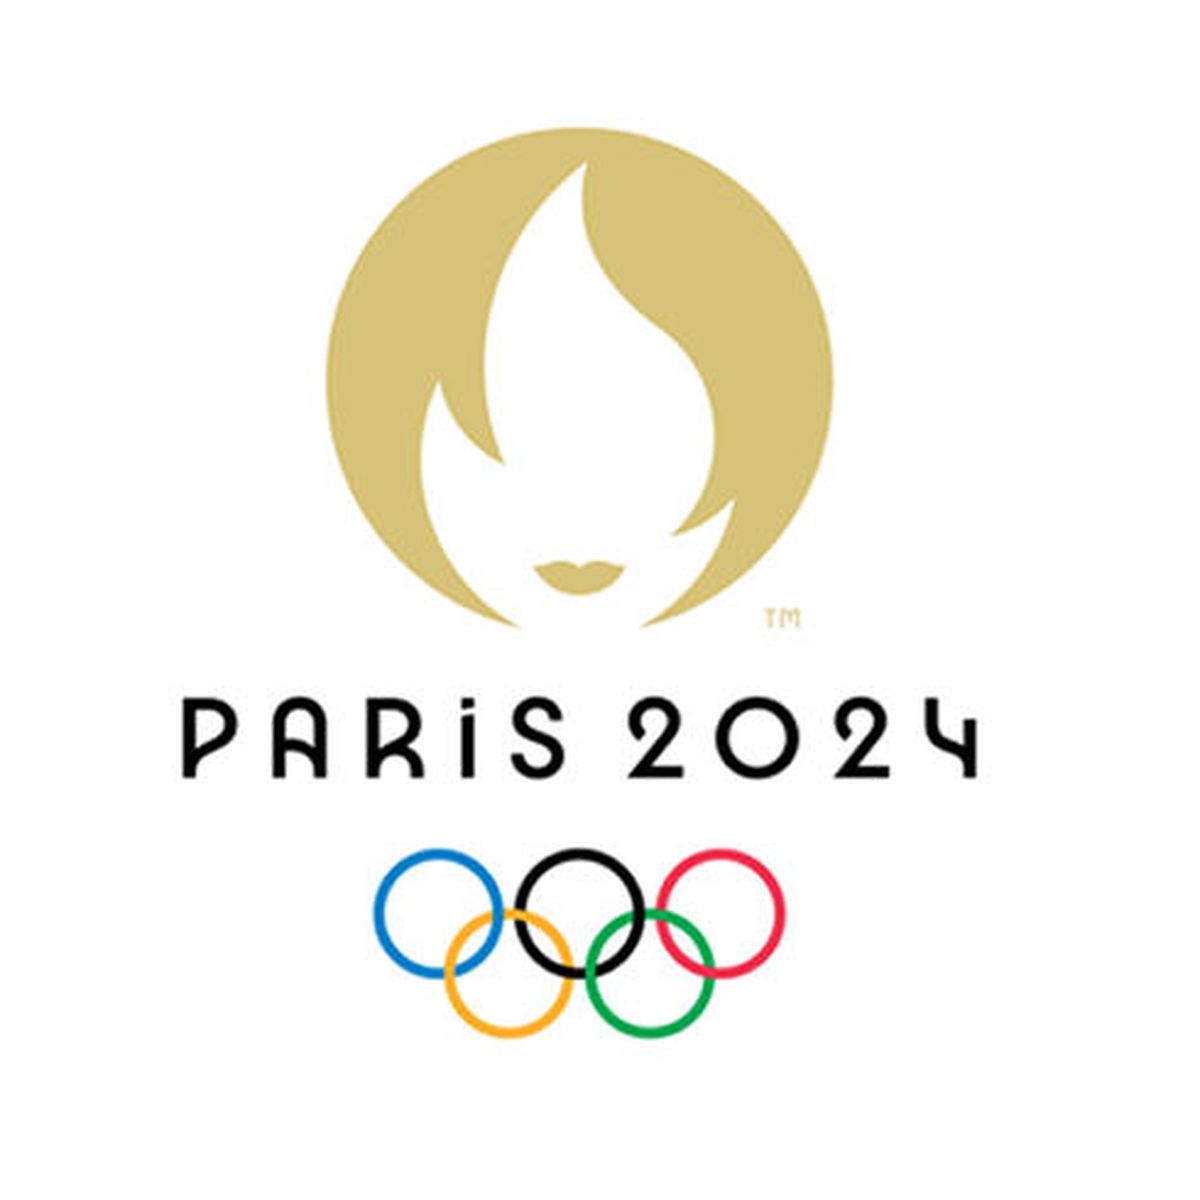 Paris 2024 partenaire de la compagnie maya